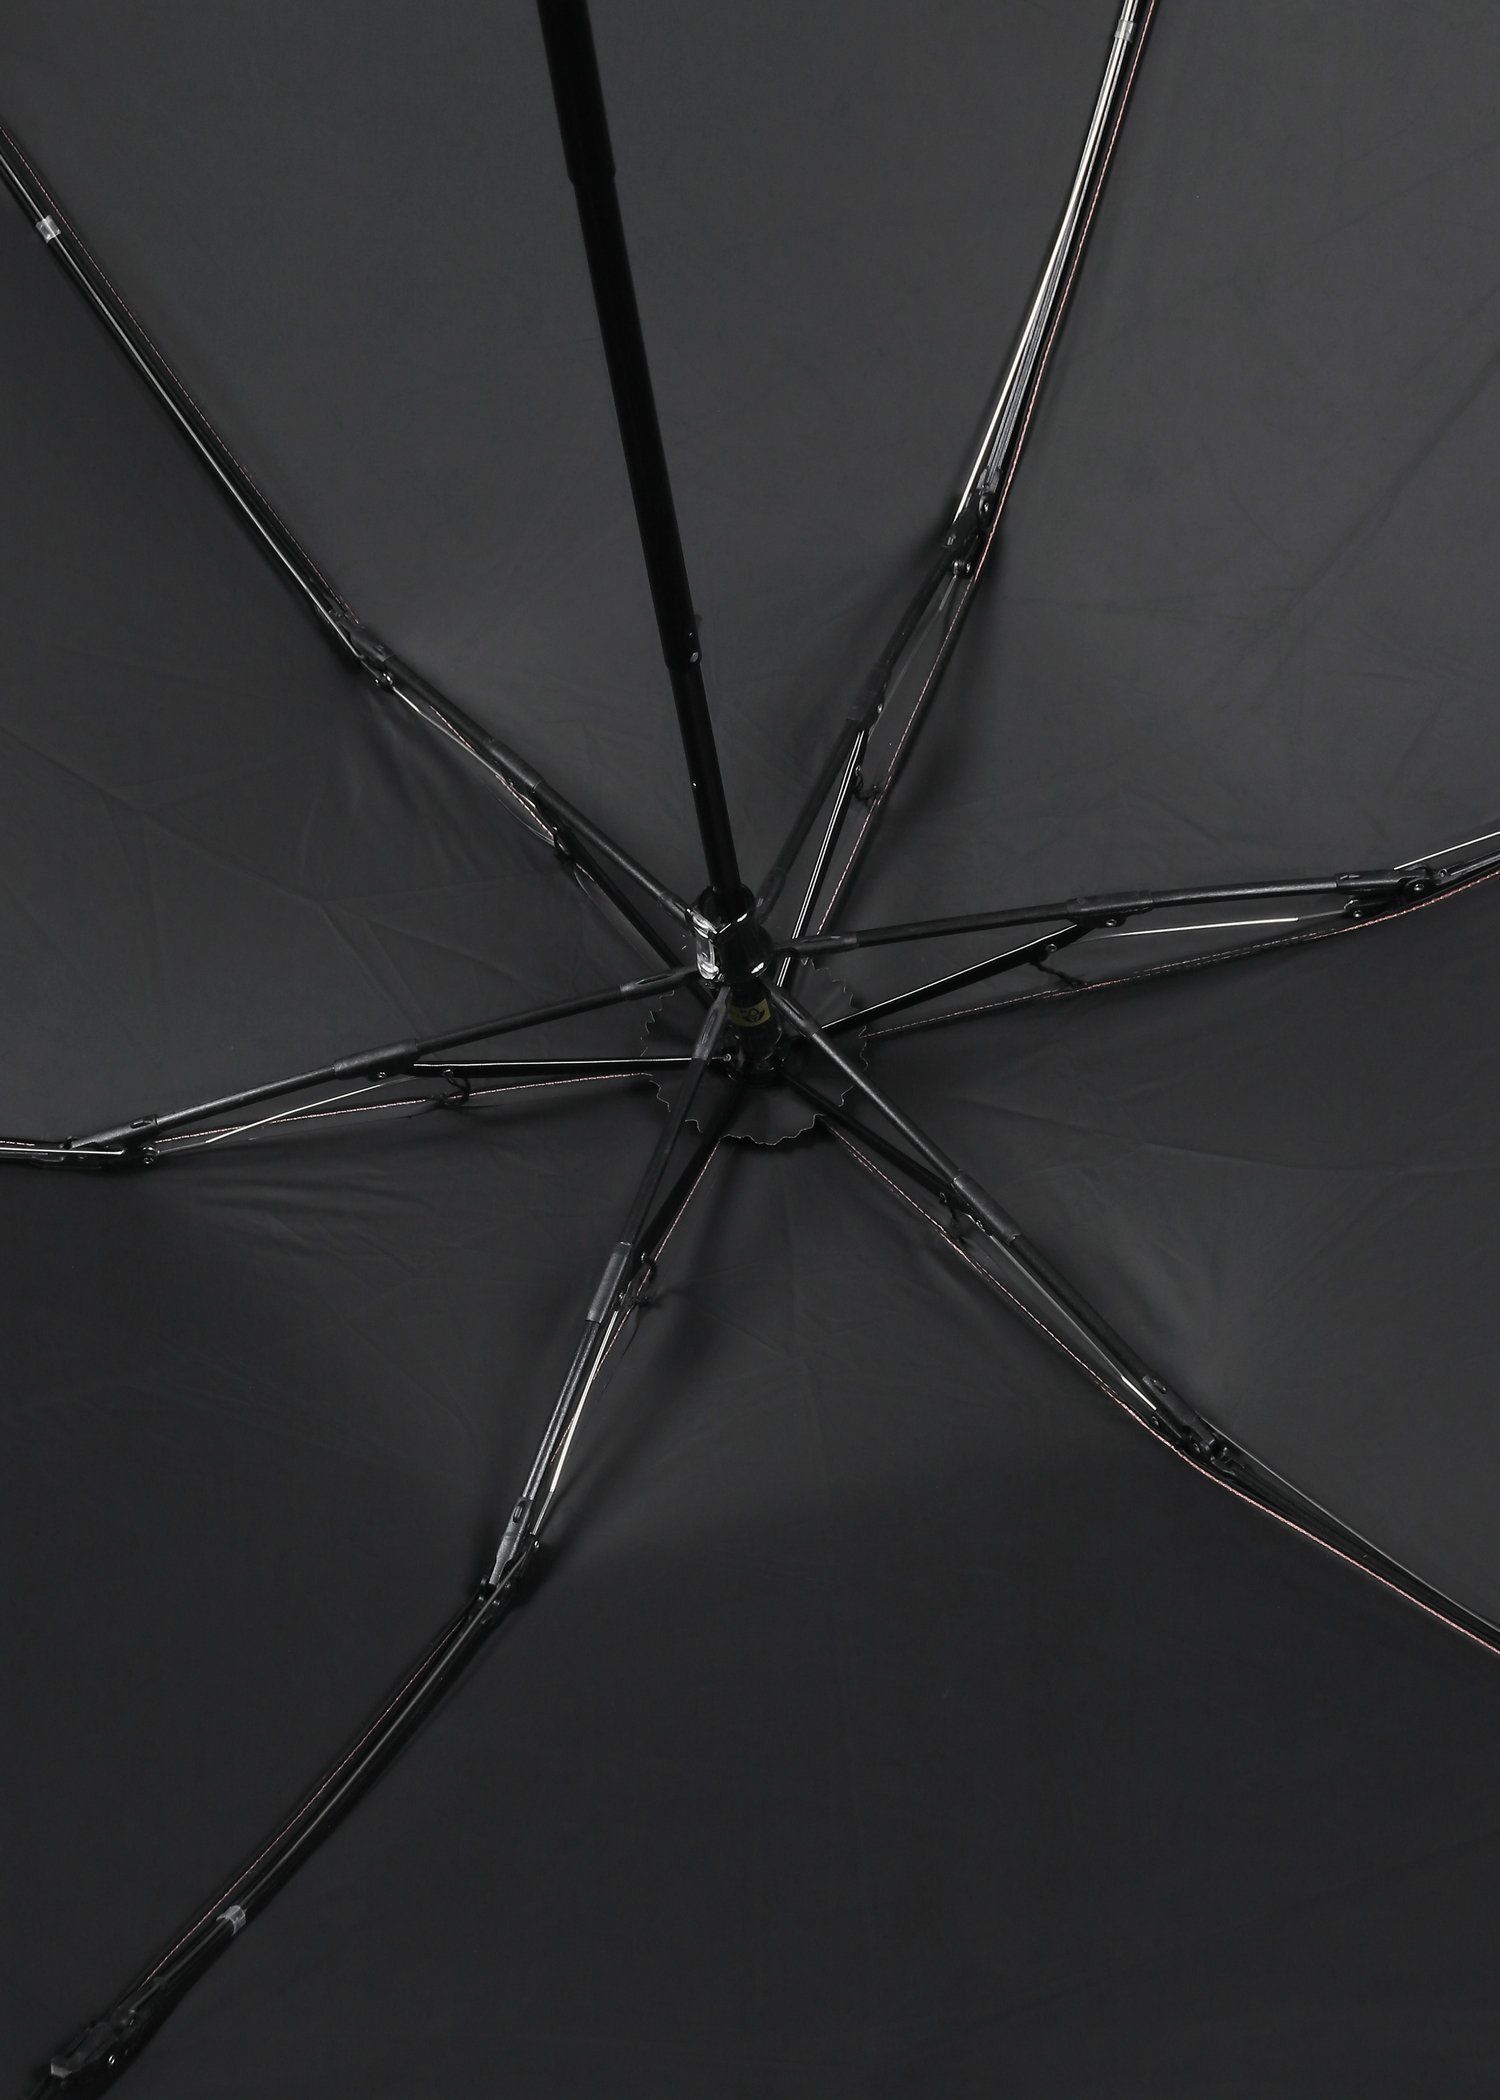 ウィメンズ プリント 折りたたみ傘